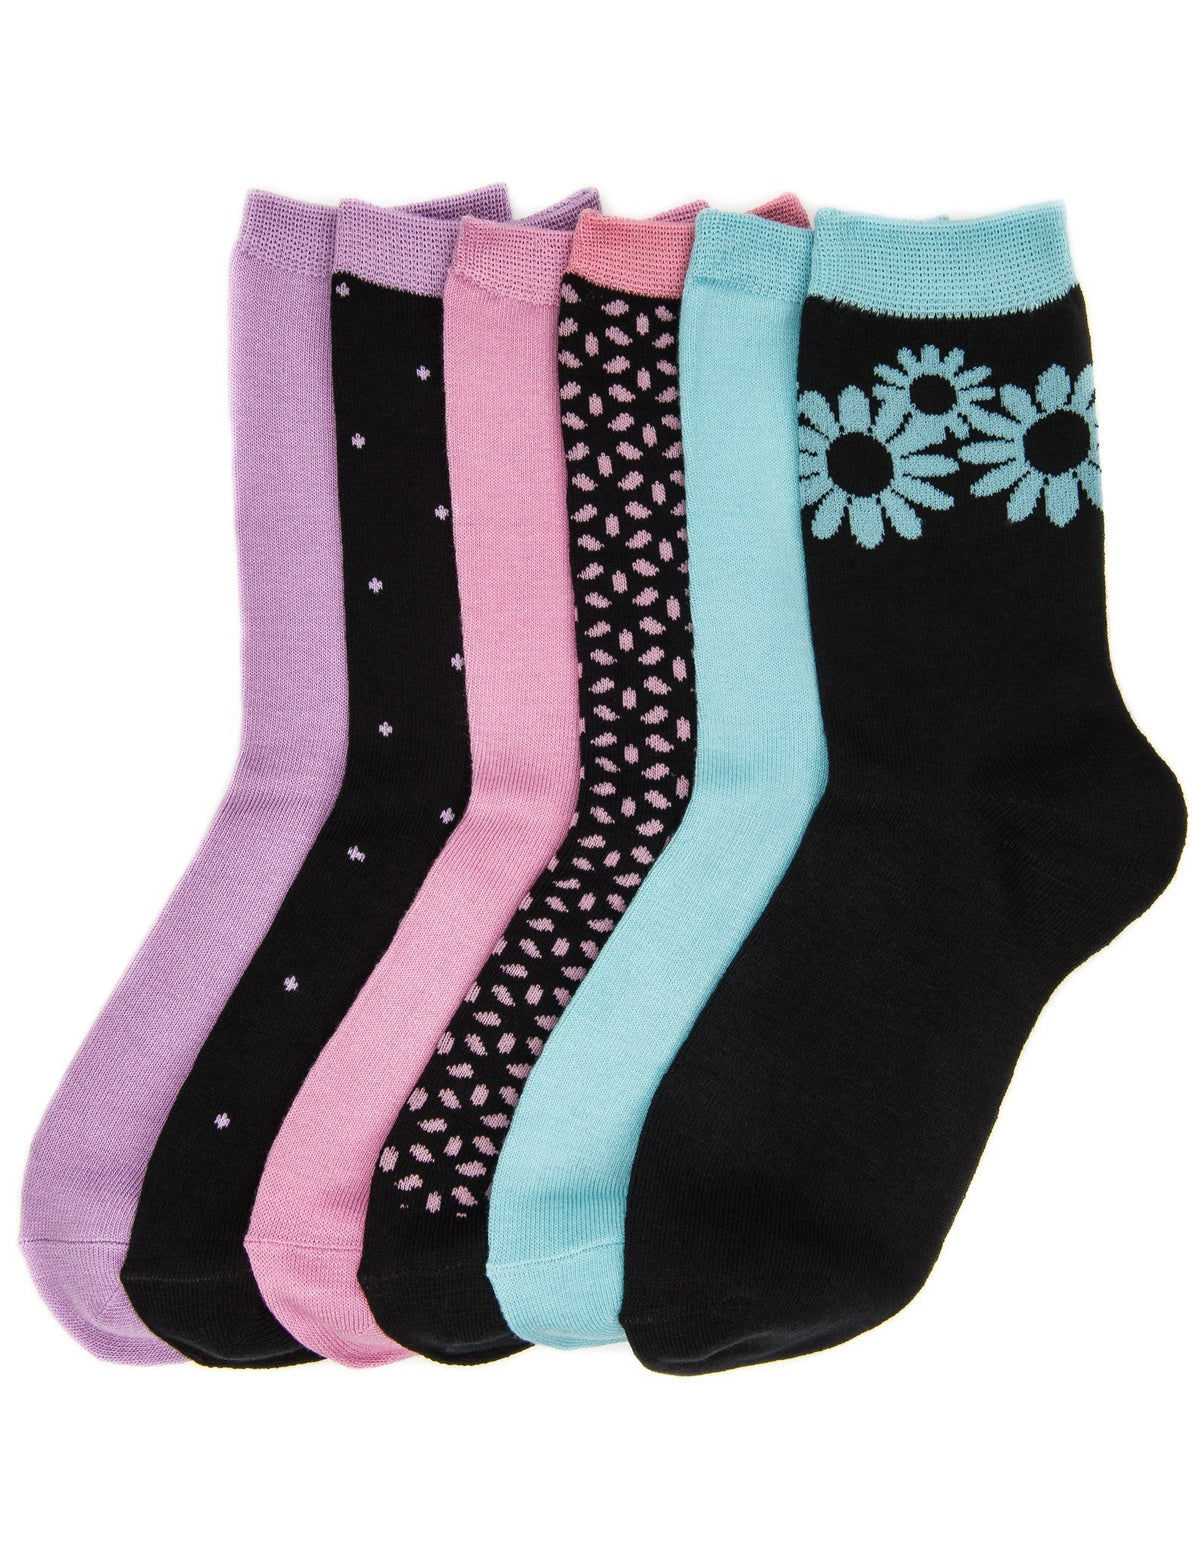 Women's Soft Premium Crew Socks - 6 Pairs - Set 3